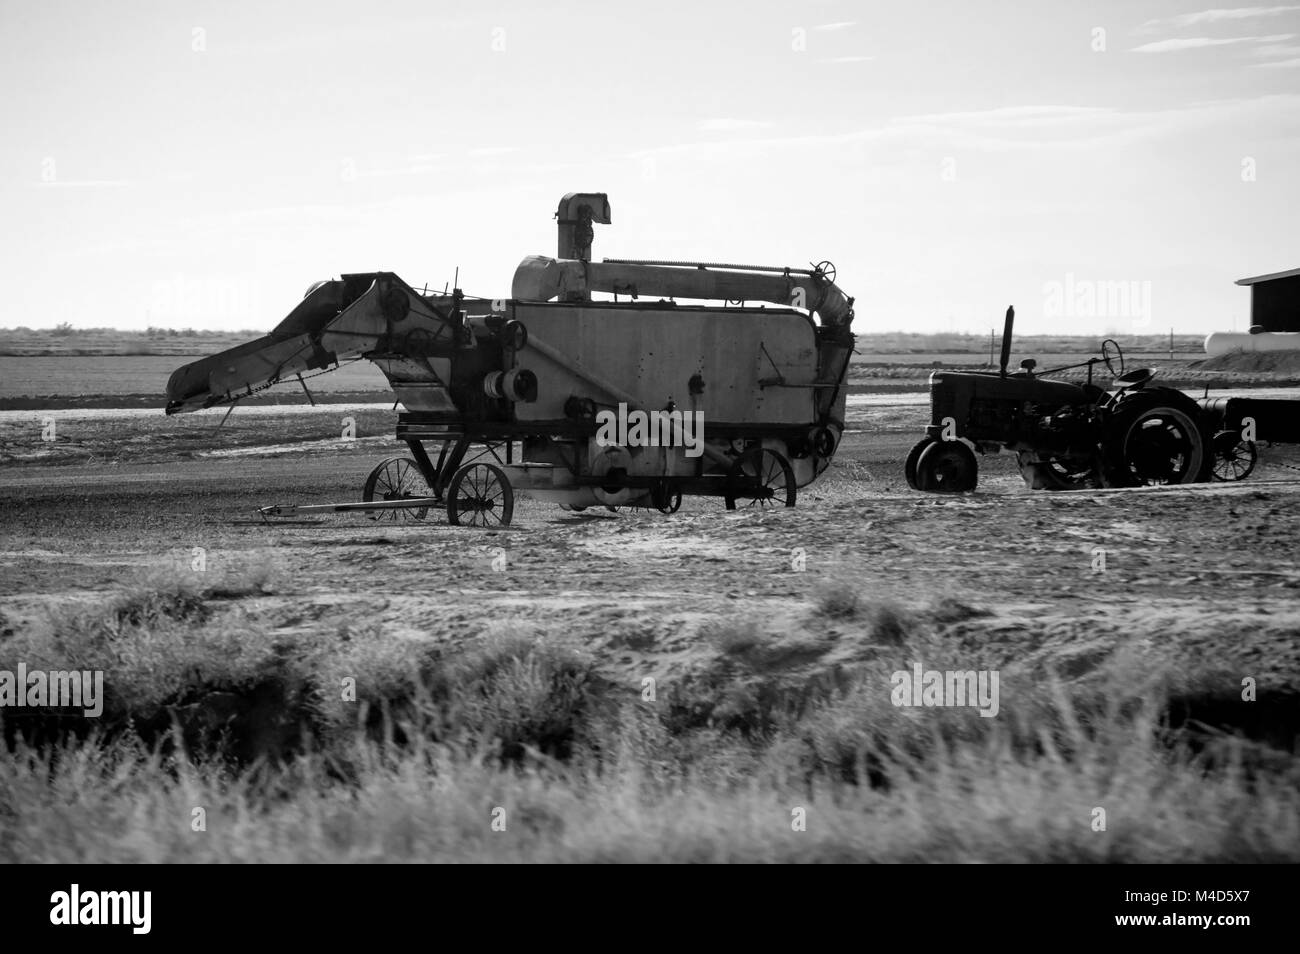 Eine altmodische Erntemaschine neben einem alten Traktor in Schwarz und Weiß. Stockfoto